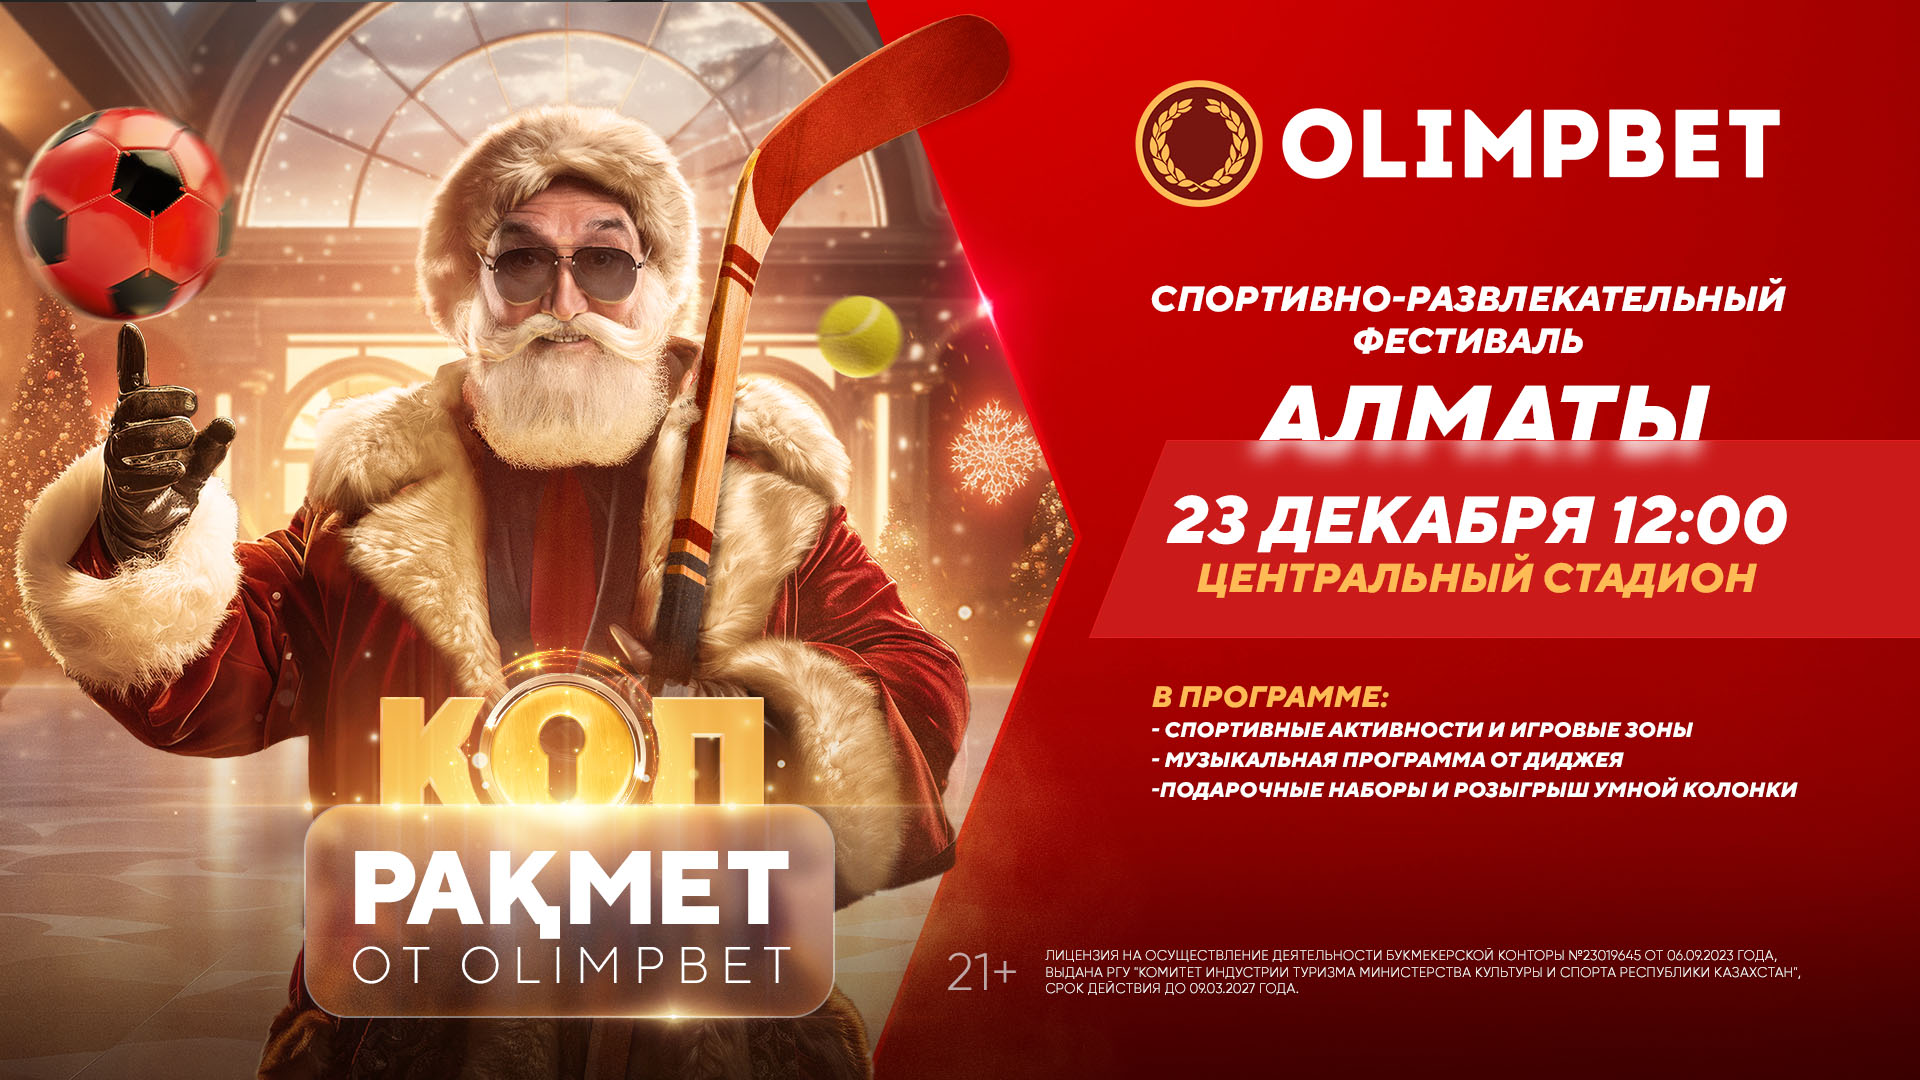 Букмекер Olimpbet анонсировал проведение фестиваля «Коп ракмет» в Алматы